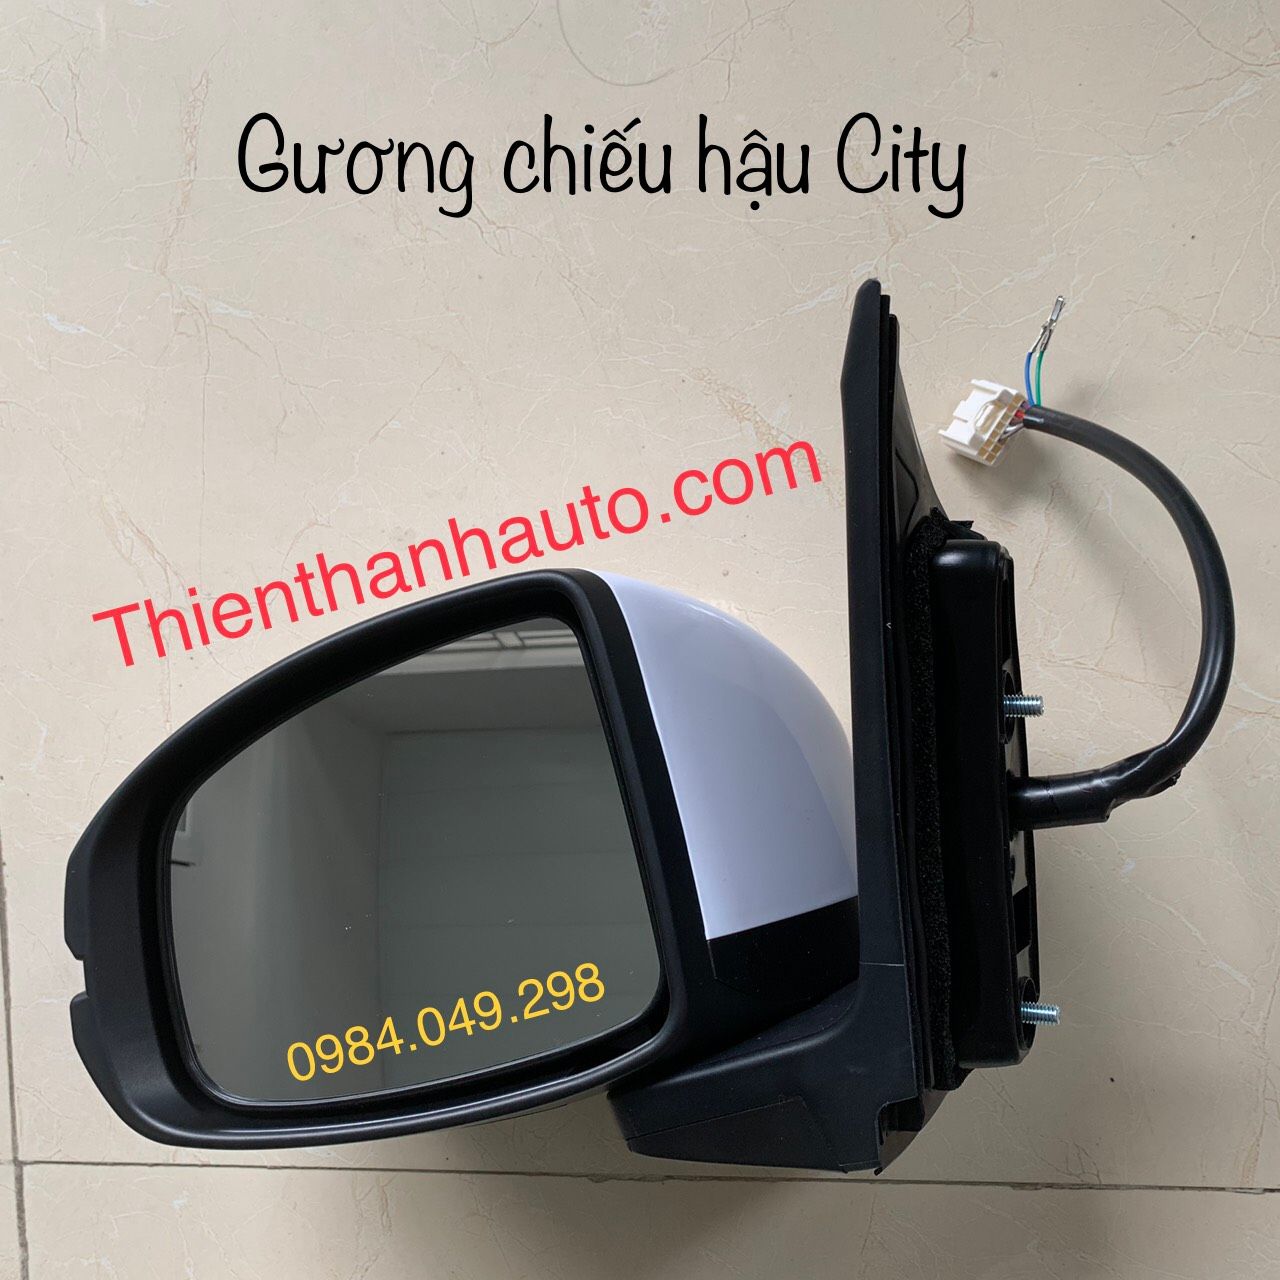 Gương chiếu hậu Honda City 2014-2020 chính hãng bên lái - trái - Phụ tùng ô tô Thiên Thanh